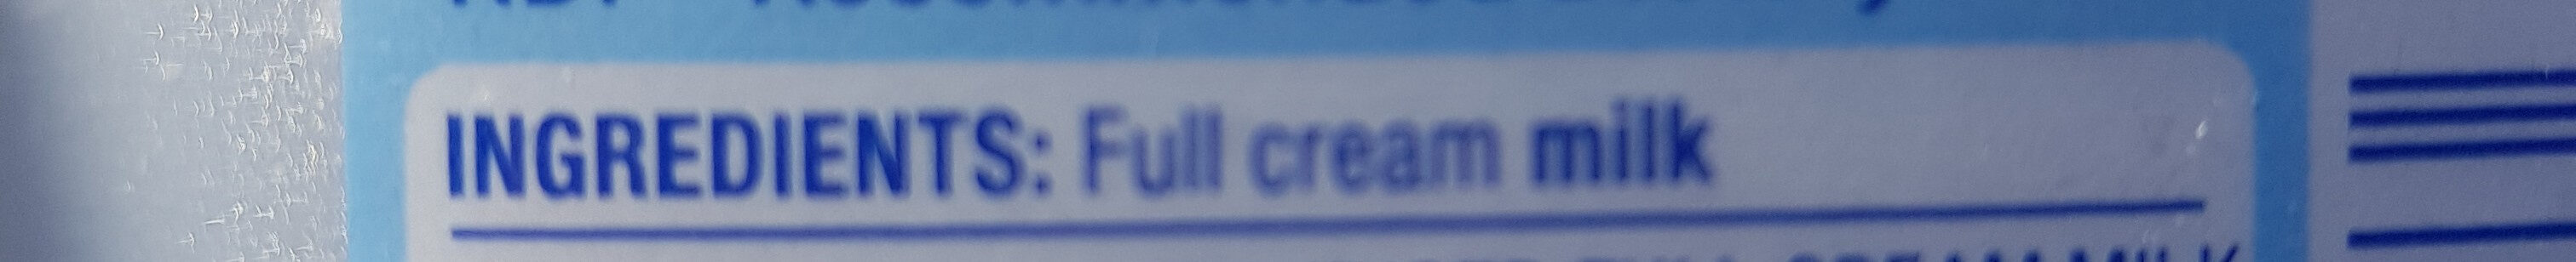 Milk Full Cream - Ingredients